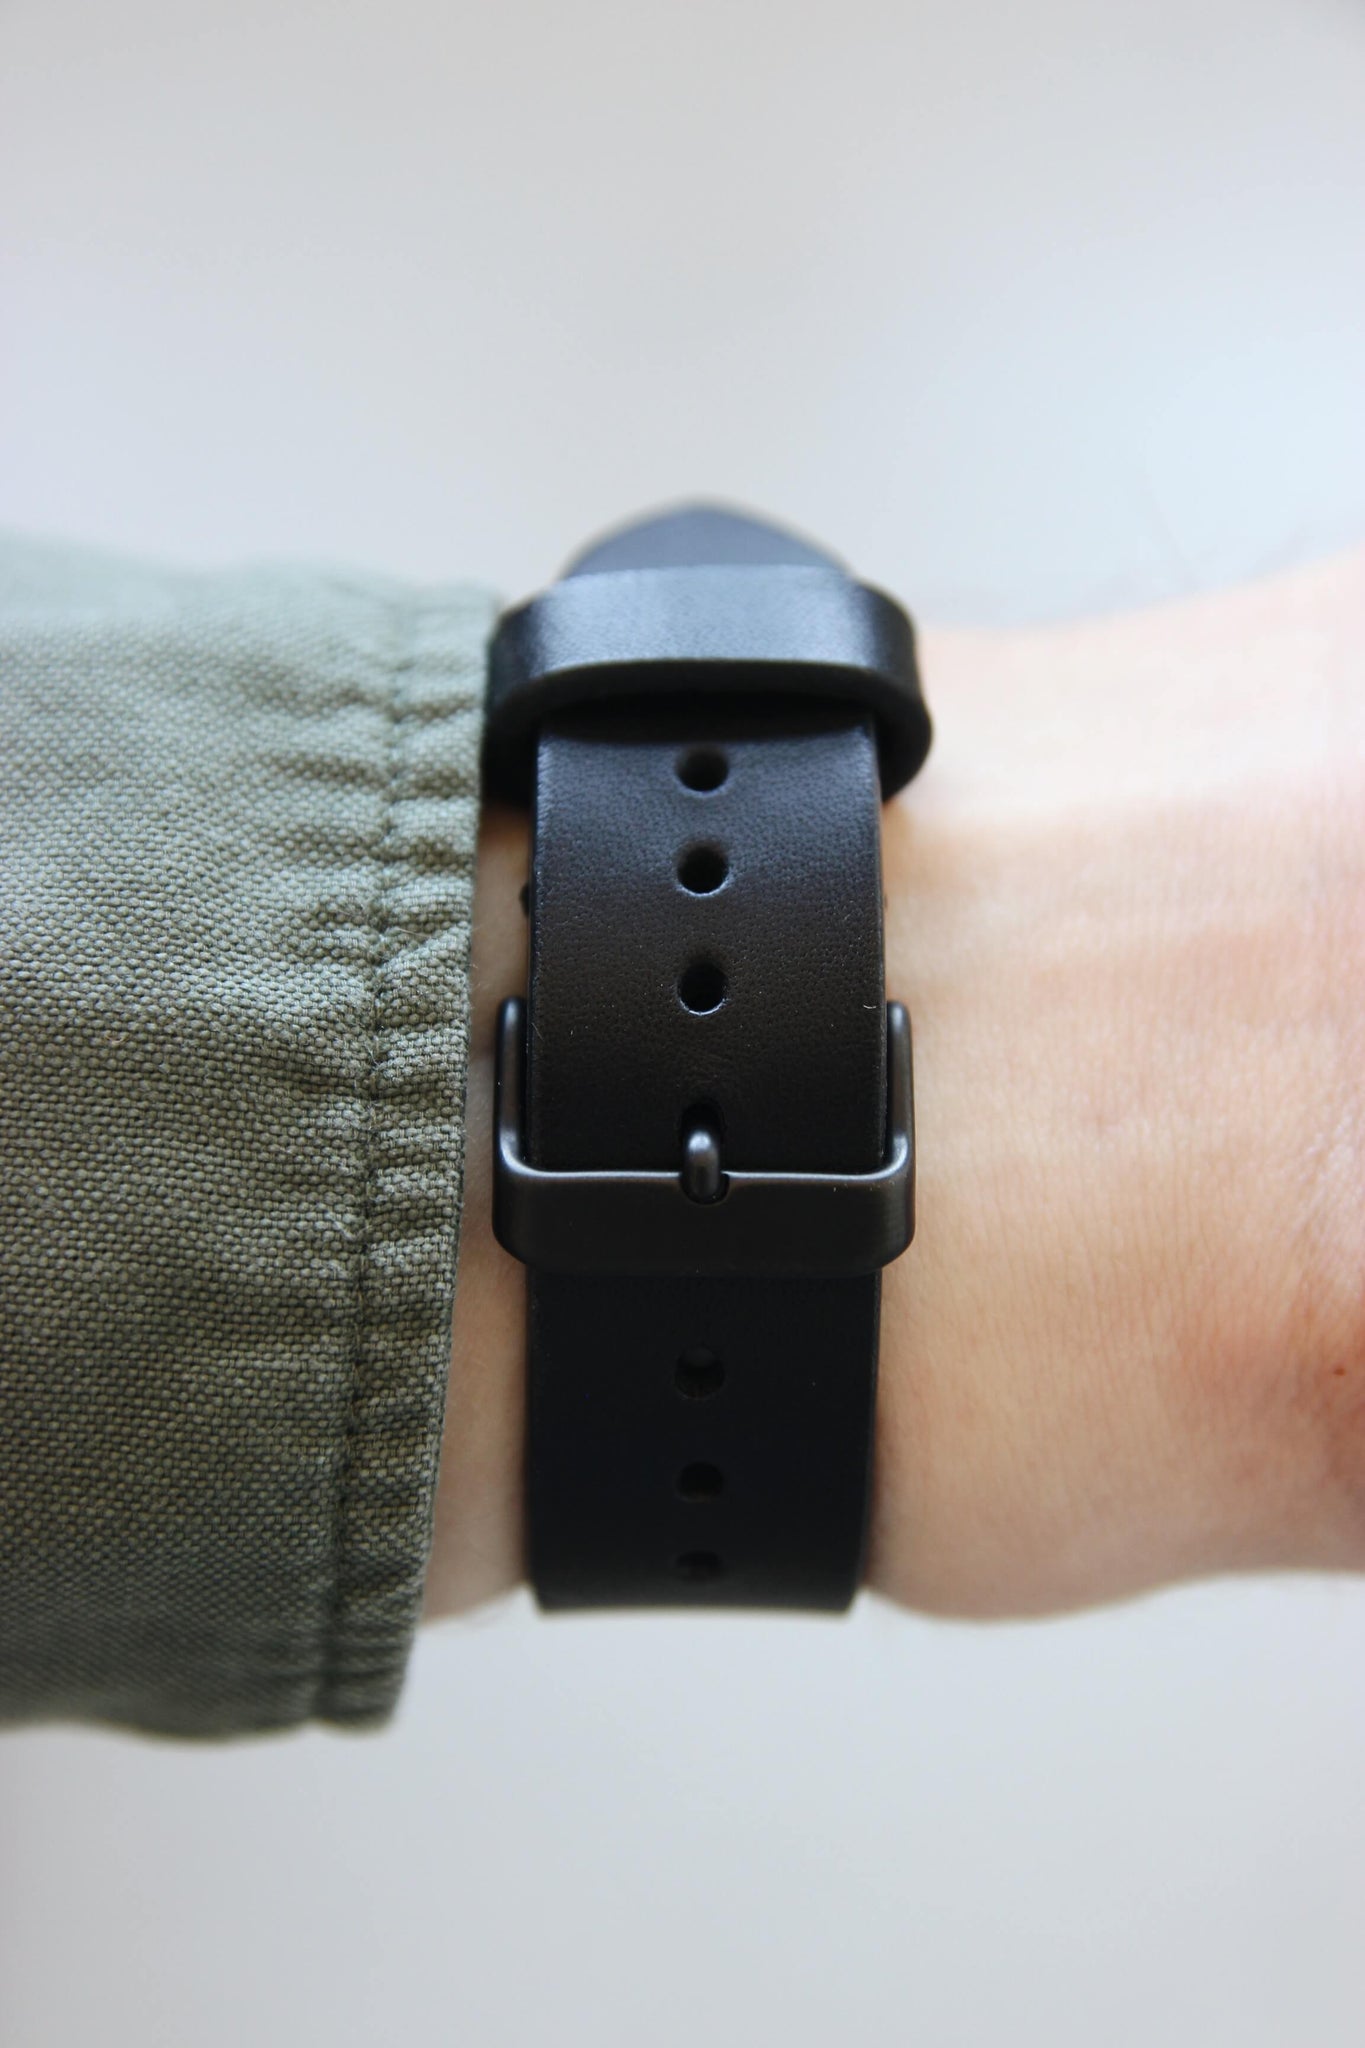 Rückansicht eines Apple Watch Lederbands in Schwarz am Handgelenk.